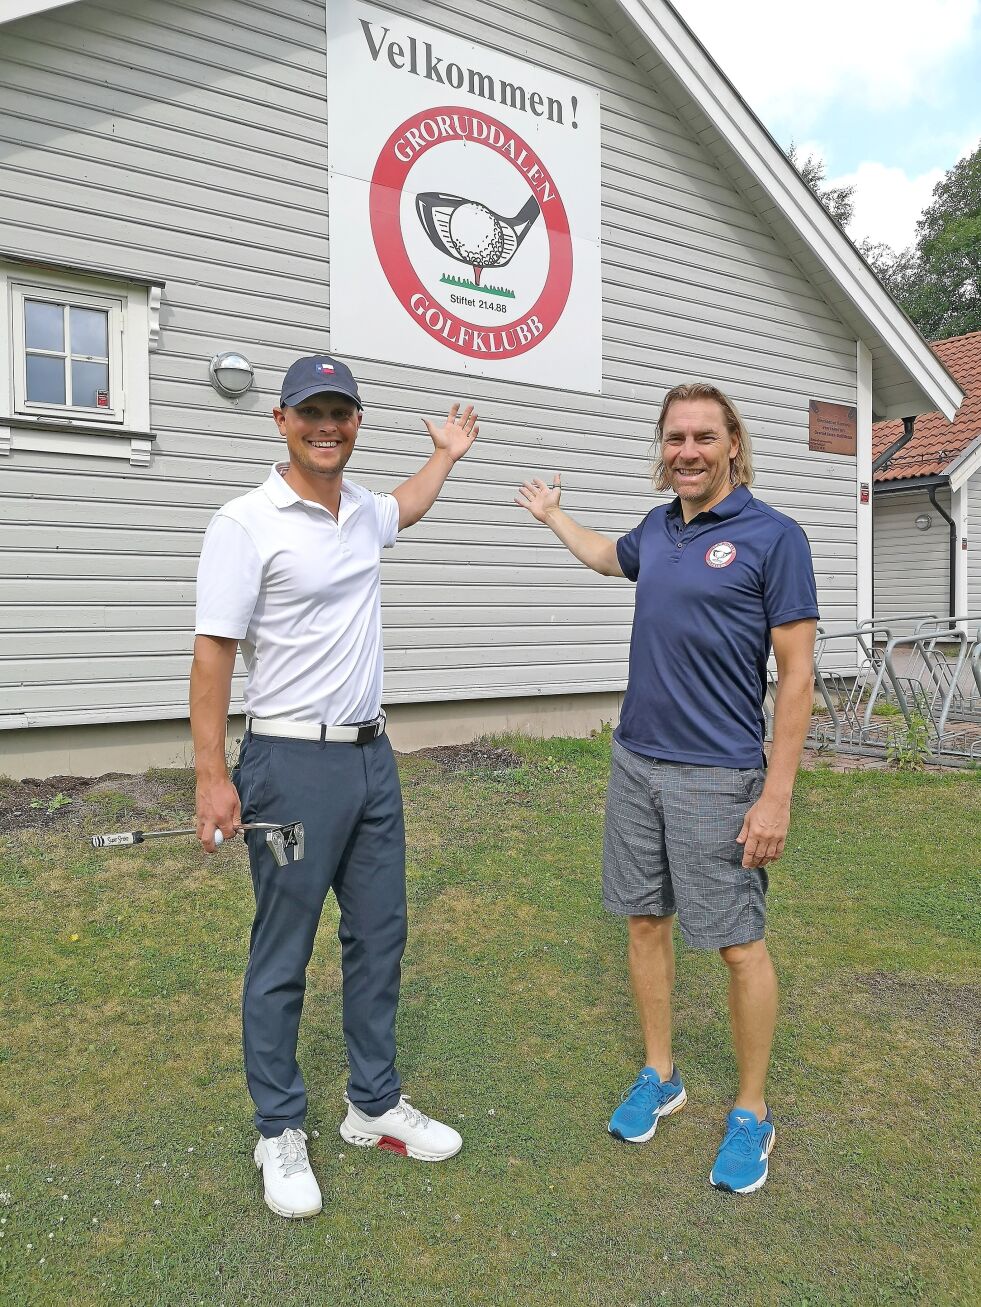 ØNSKER VELKOMMEN: Torbjørn Johansen og Rolf Børresen ønsker unge groruddøler velkommen til Groruddalen Golfklubb for å prøve seg og bli kjent med idretten.